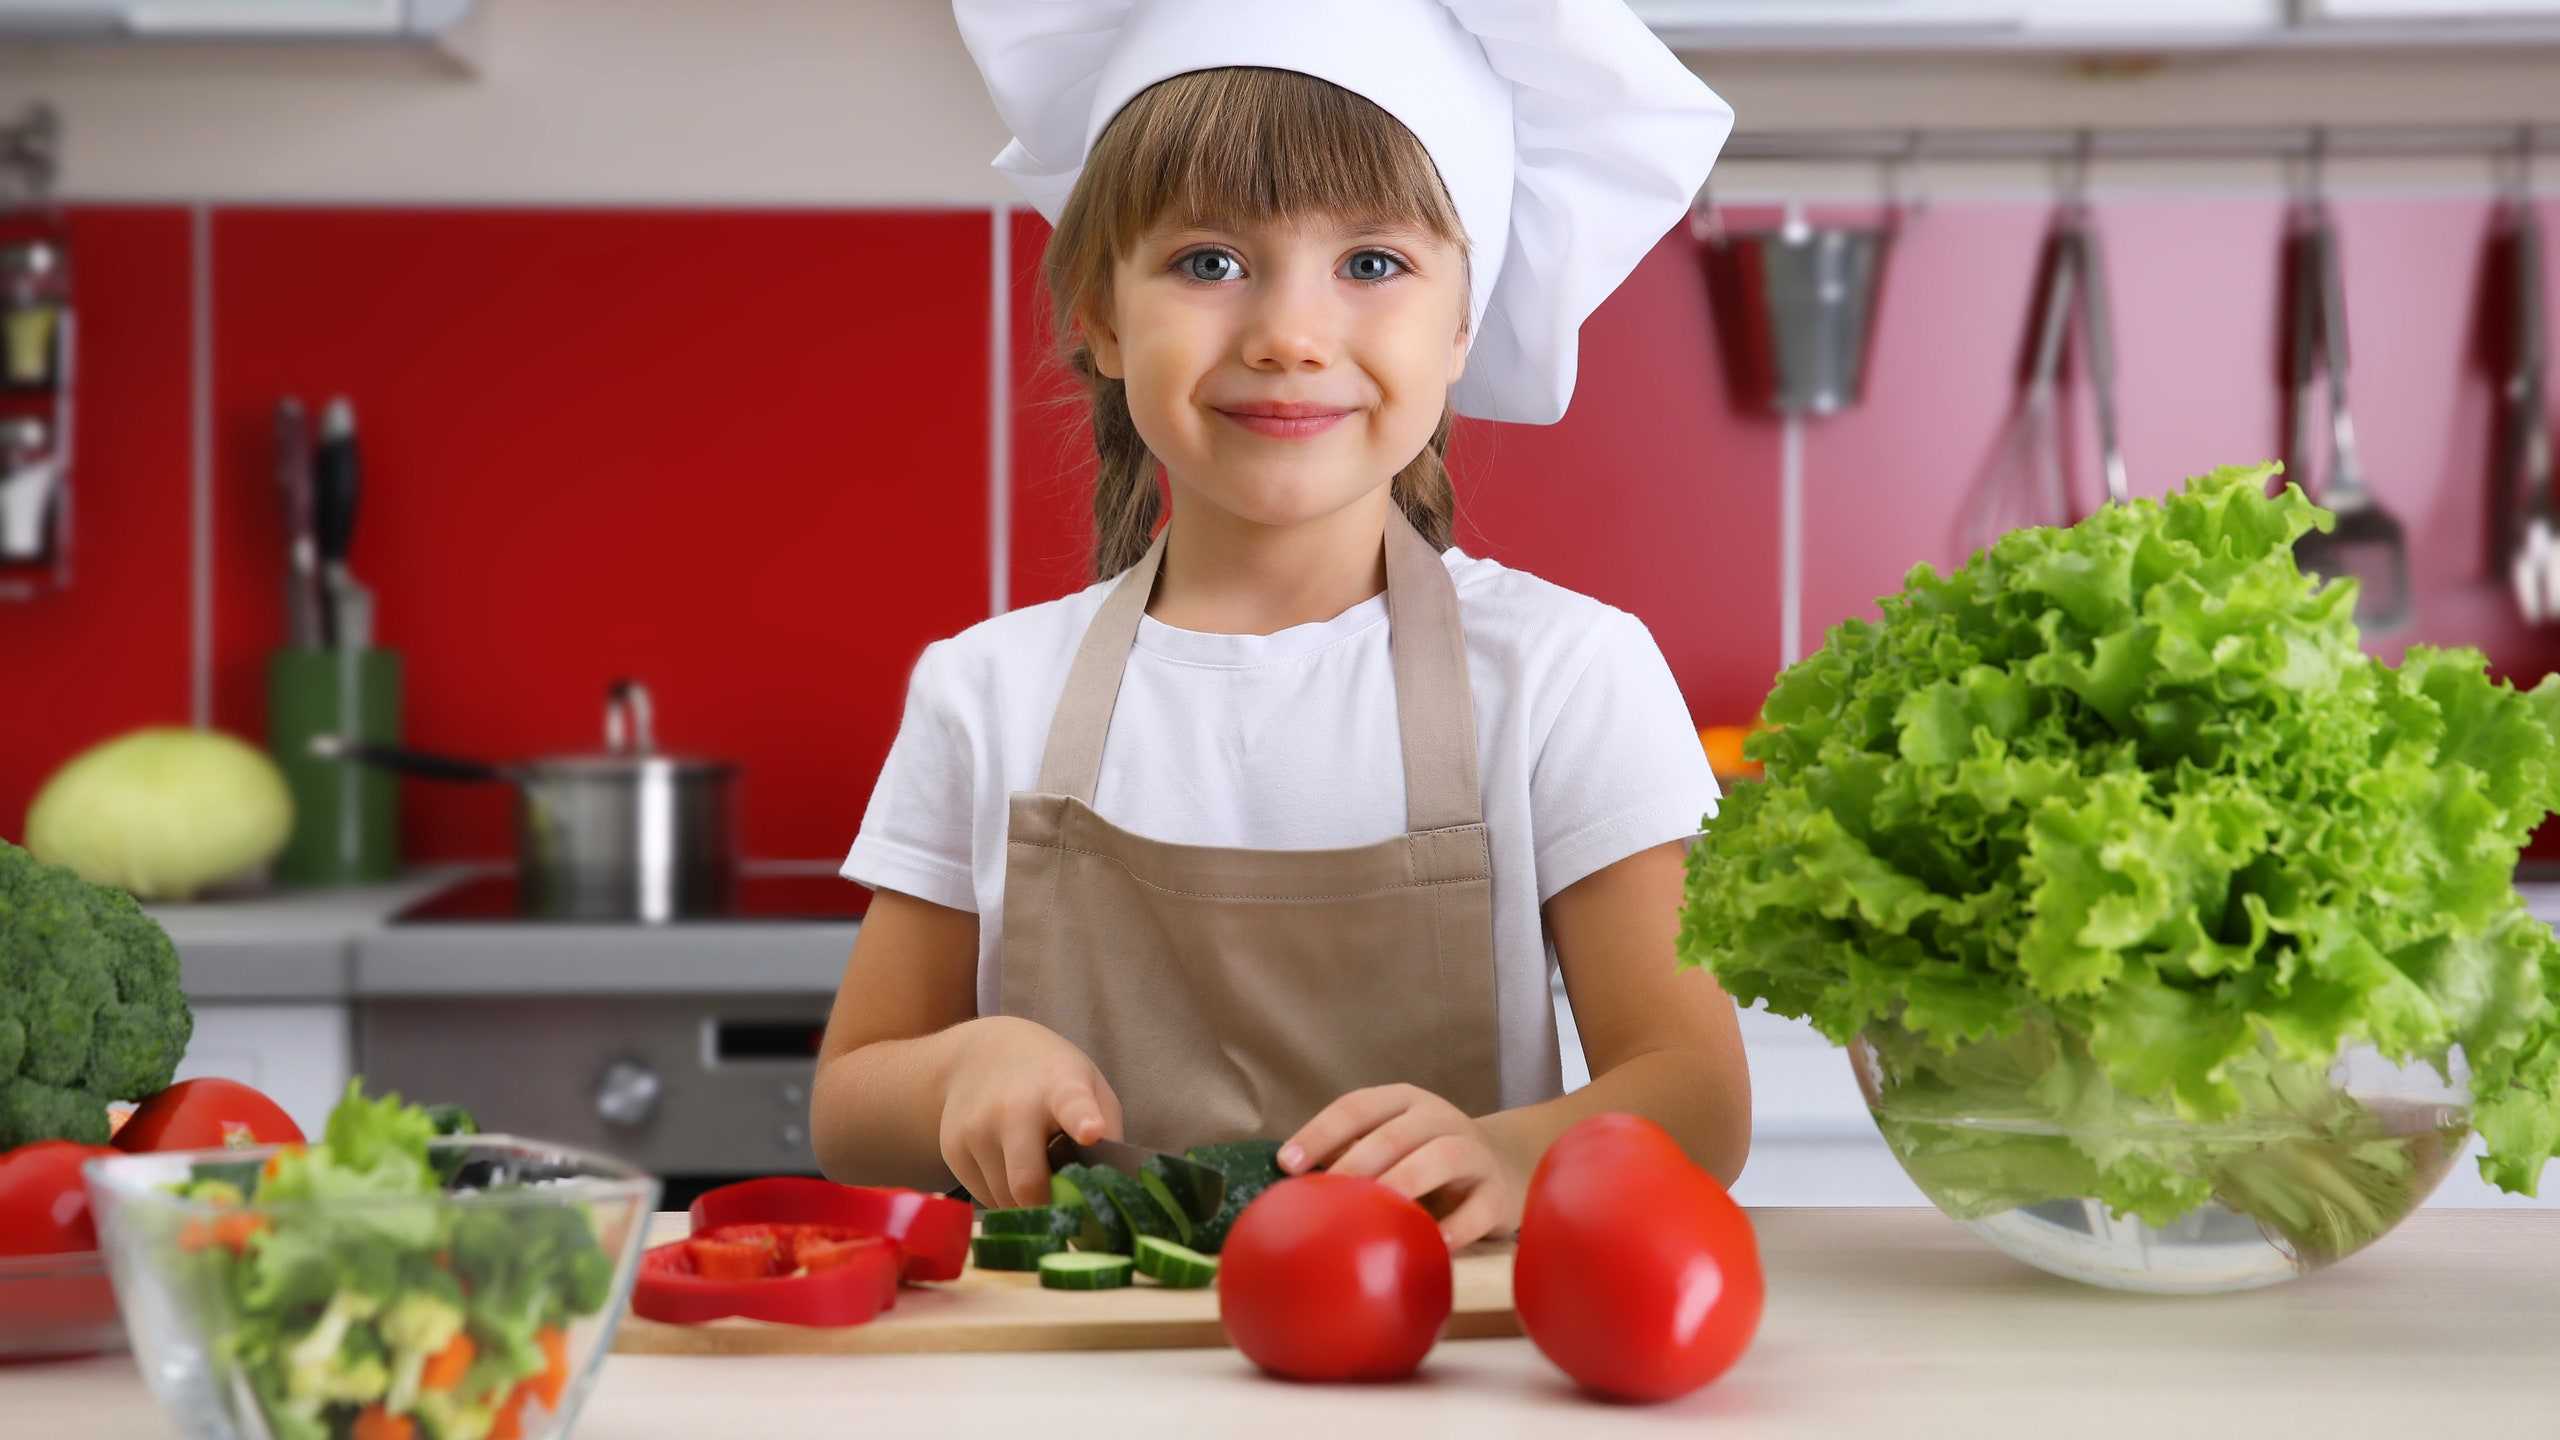 Ребенок после года: чем его накормить и как научить есть самостоятельно